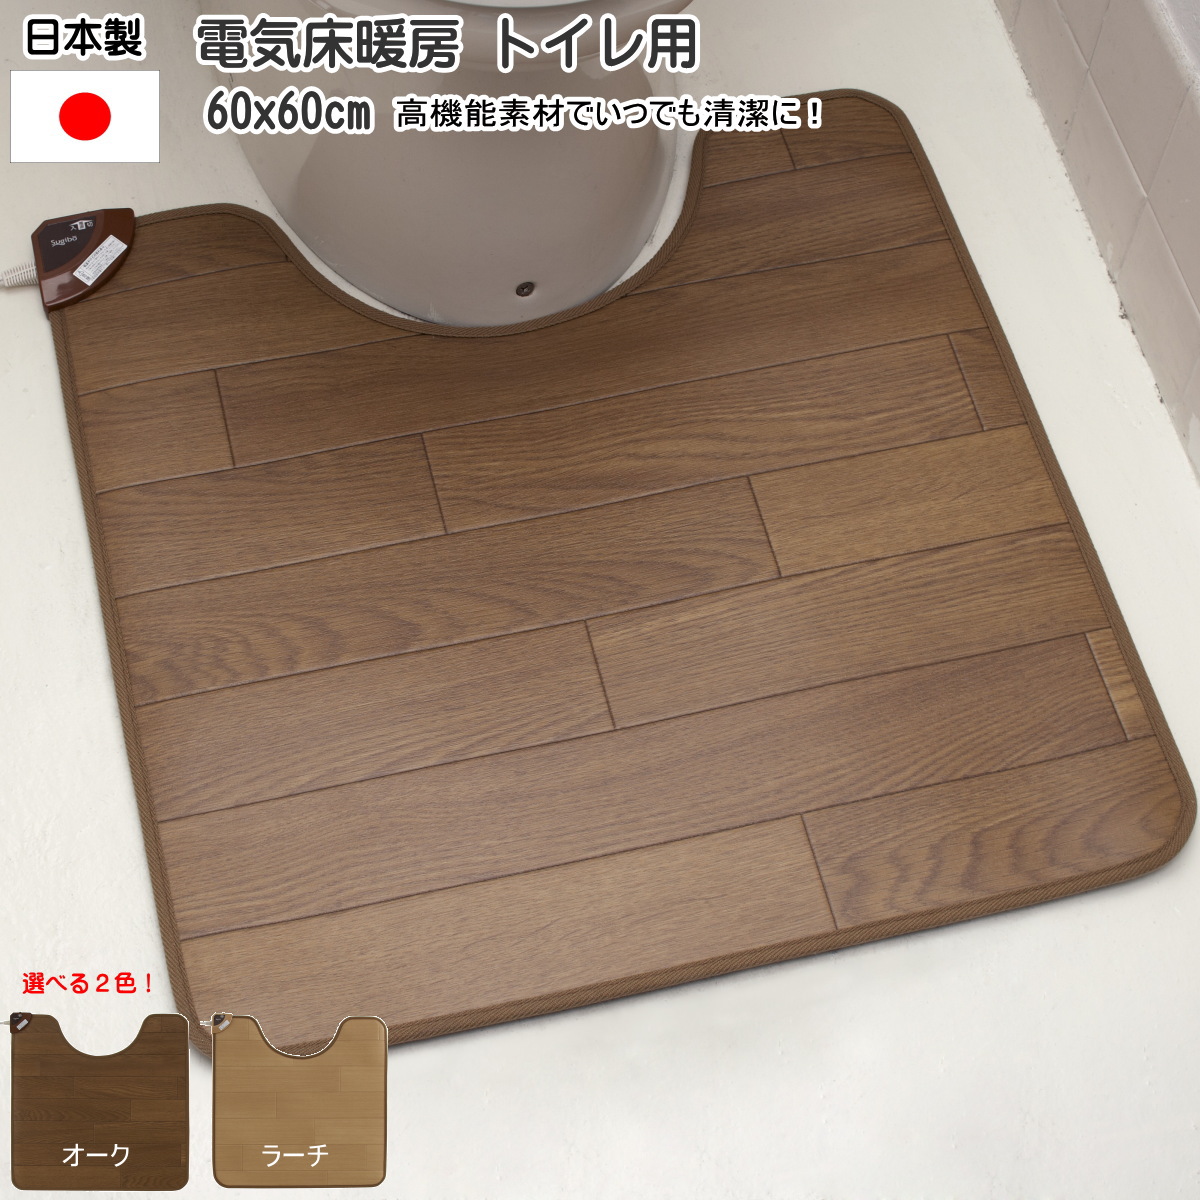 【楽天市場】日本製 電気床暖房 ホット トイレマット 60×60cm / 電気カーペット/床暖房 防水 抗菌